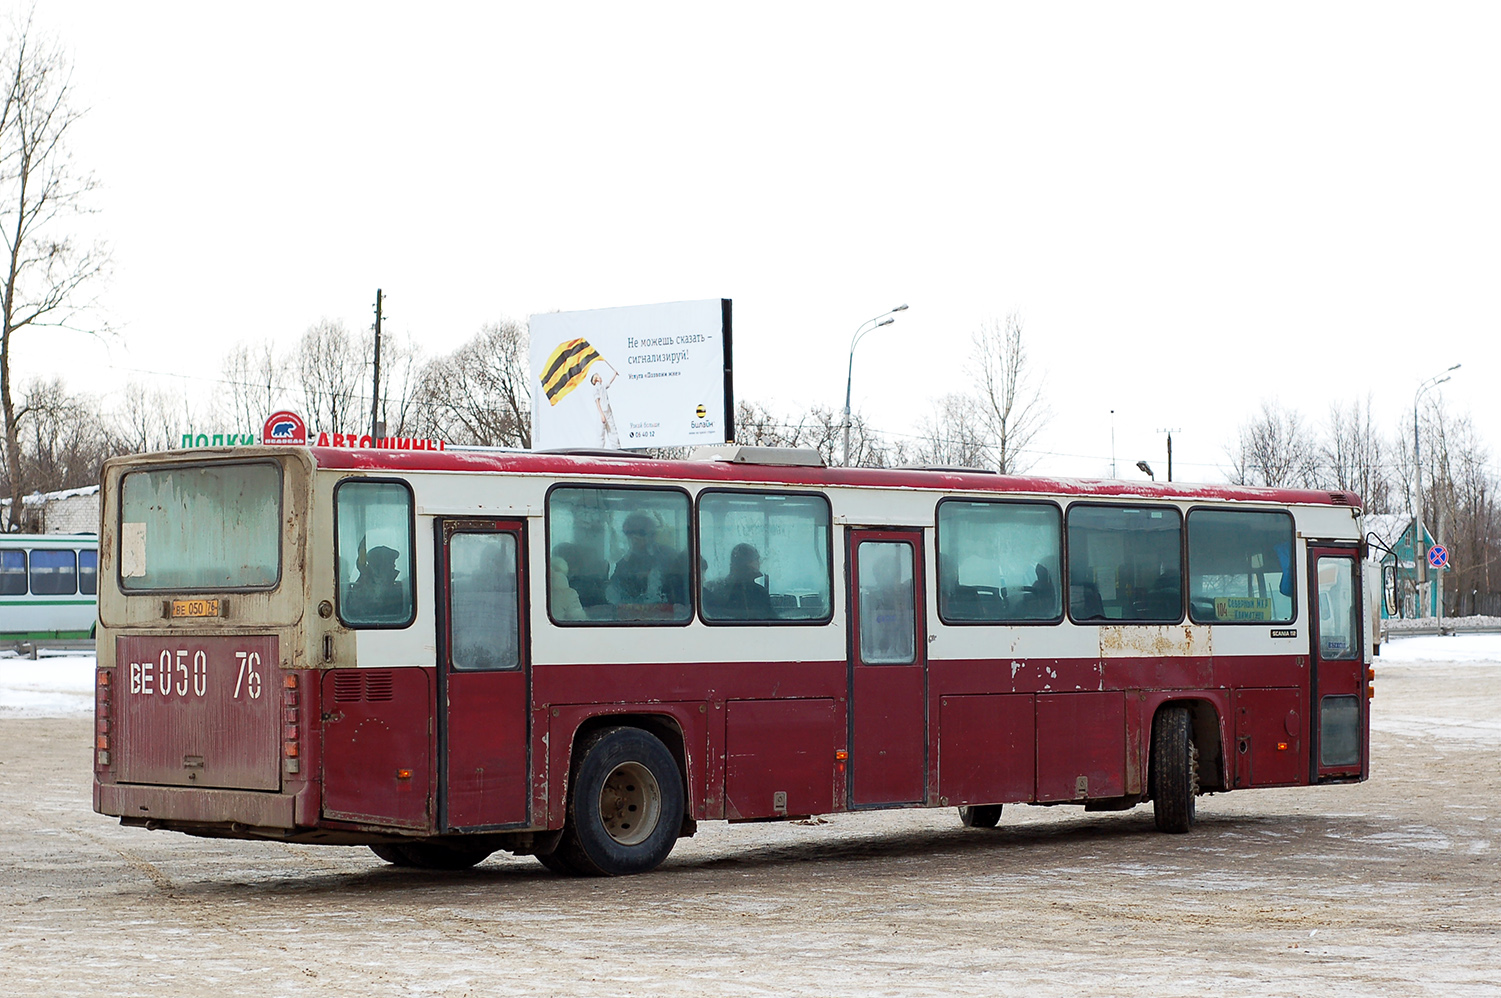 Yaroslavl region, Scania CR112 # ВЕ 050 76